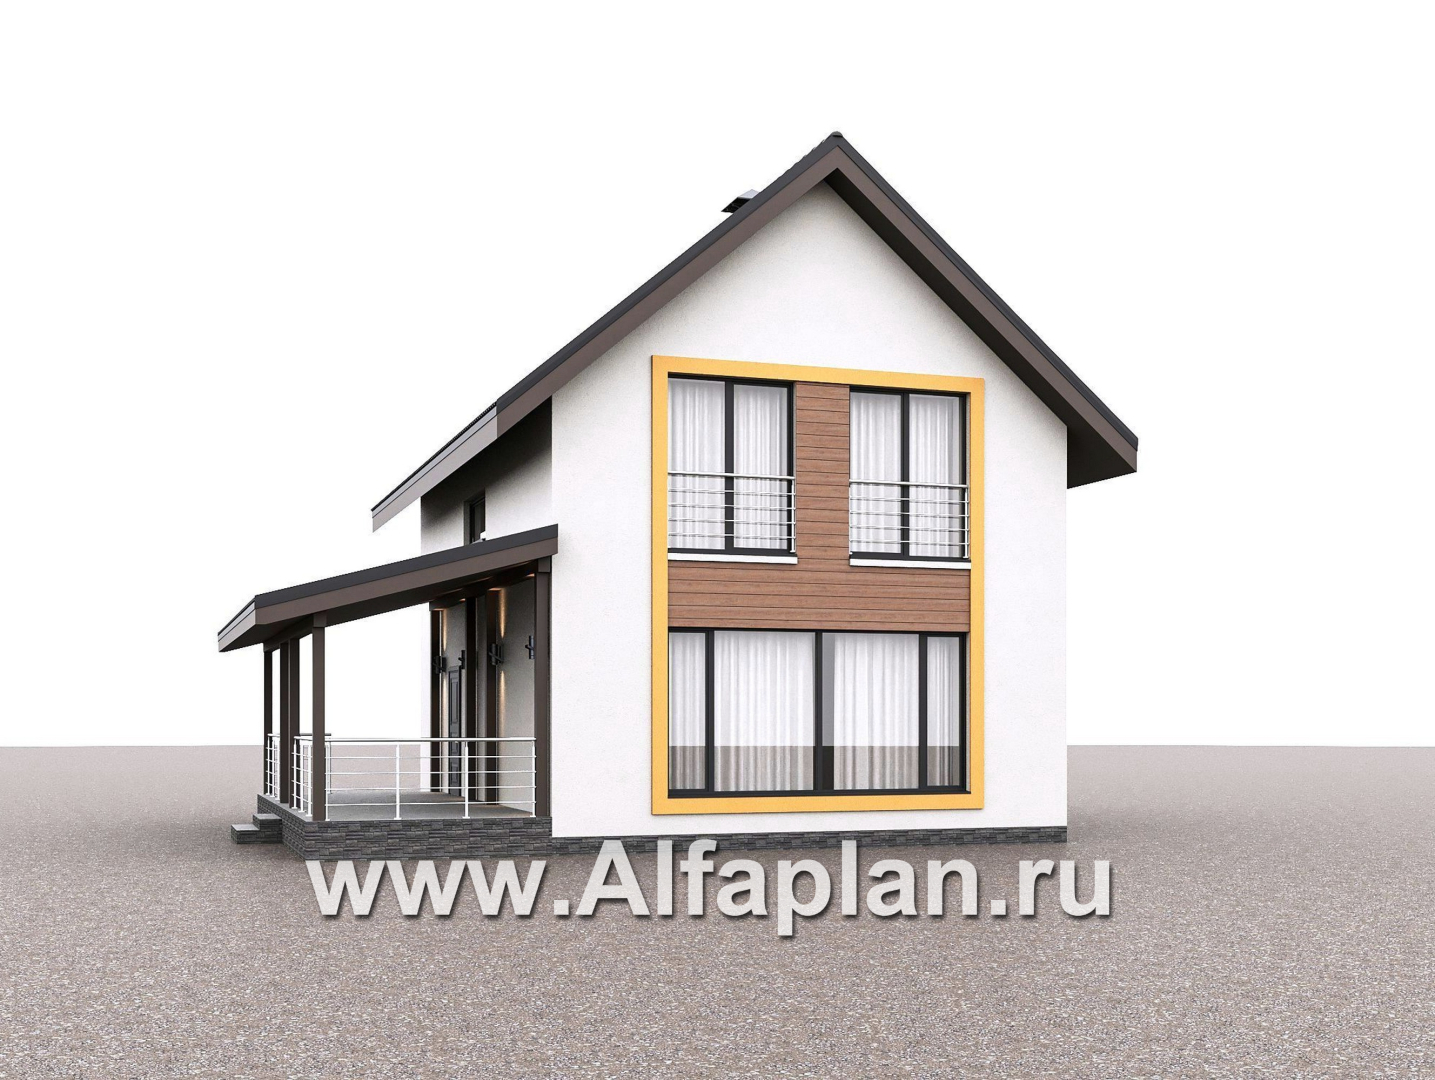 «Викинг» - проект дома, 2 этажа, с сауной и с террасой сбоку, в скандинавском стиле - дизайн дома №4